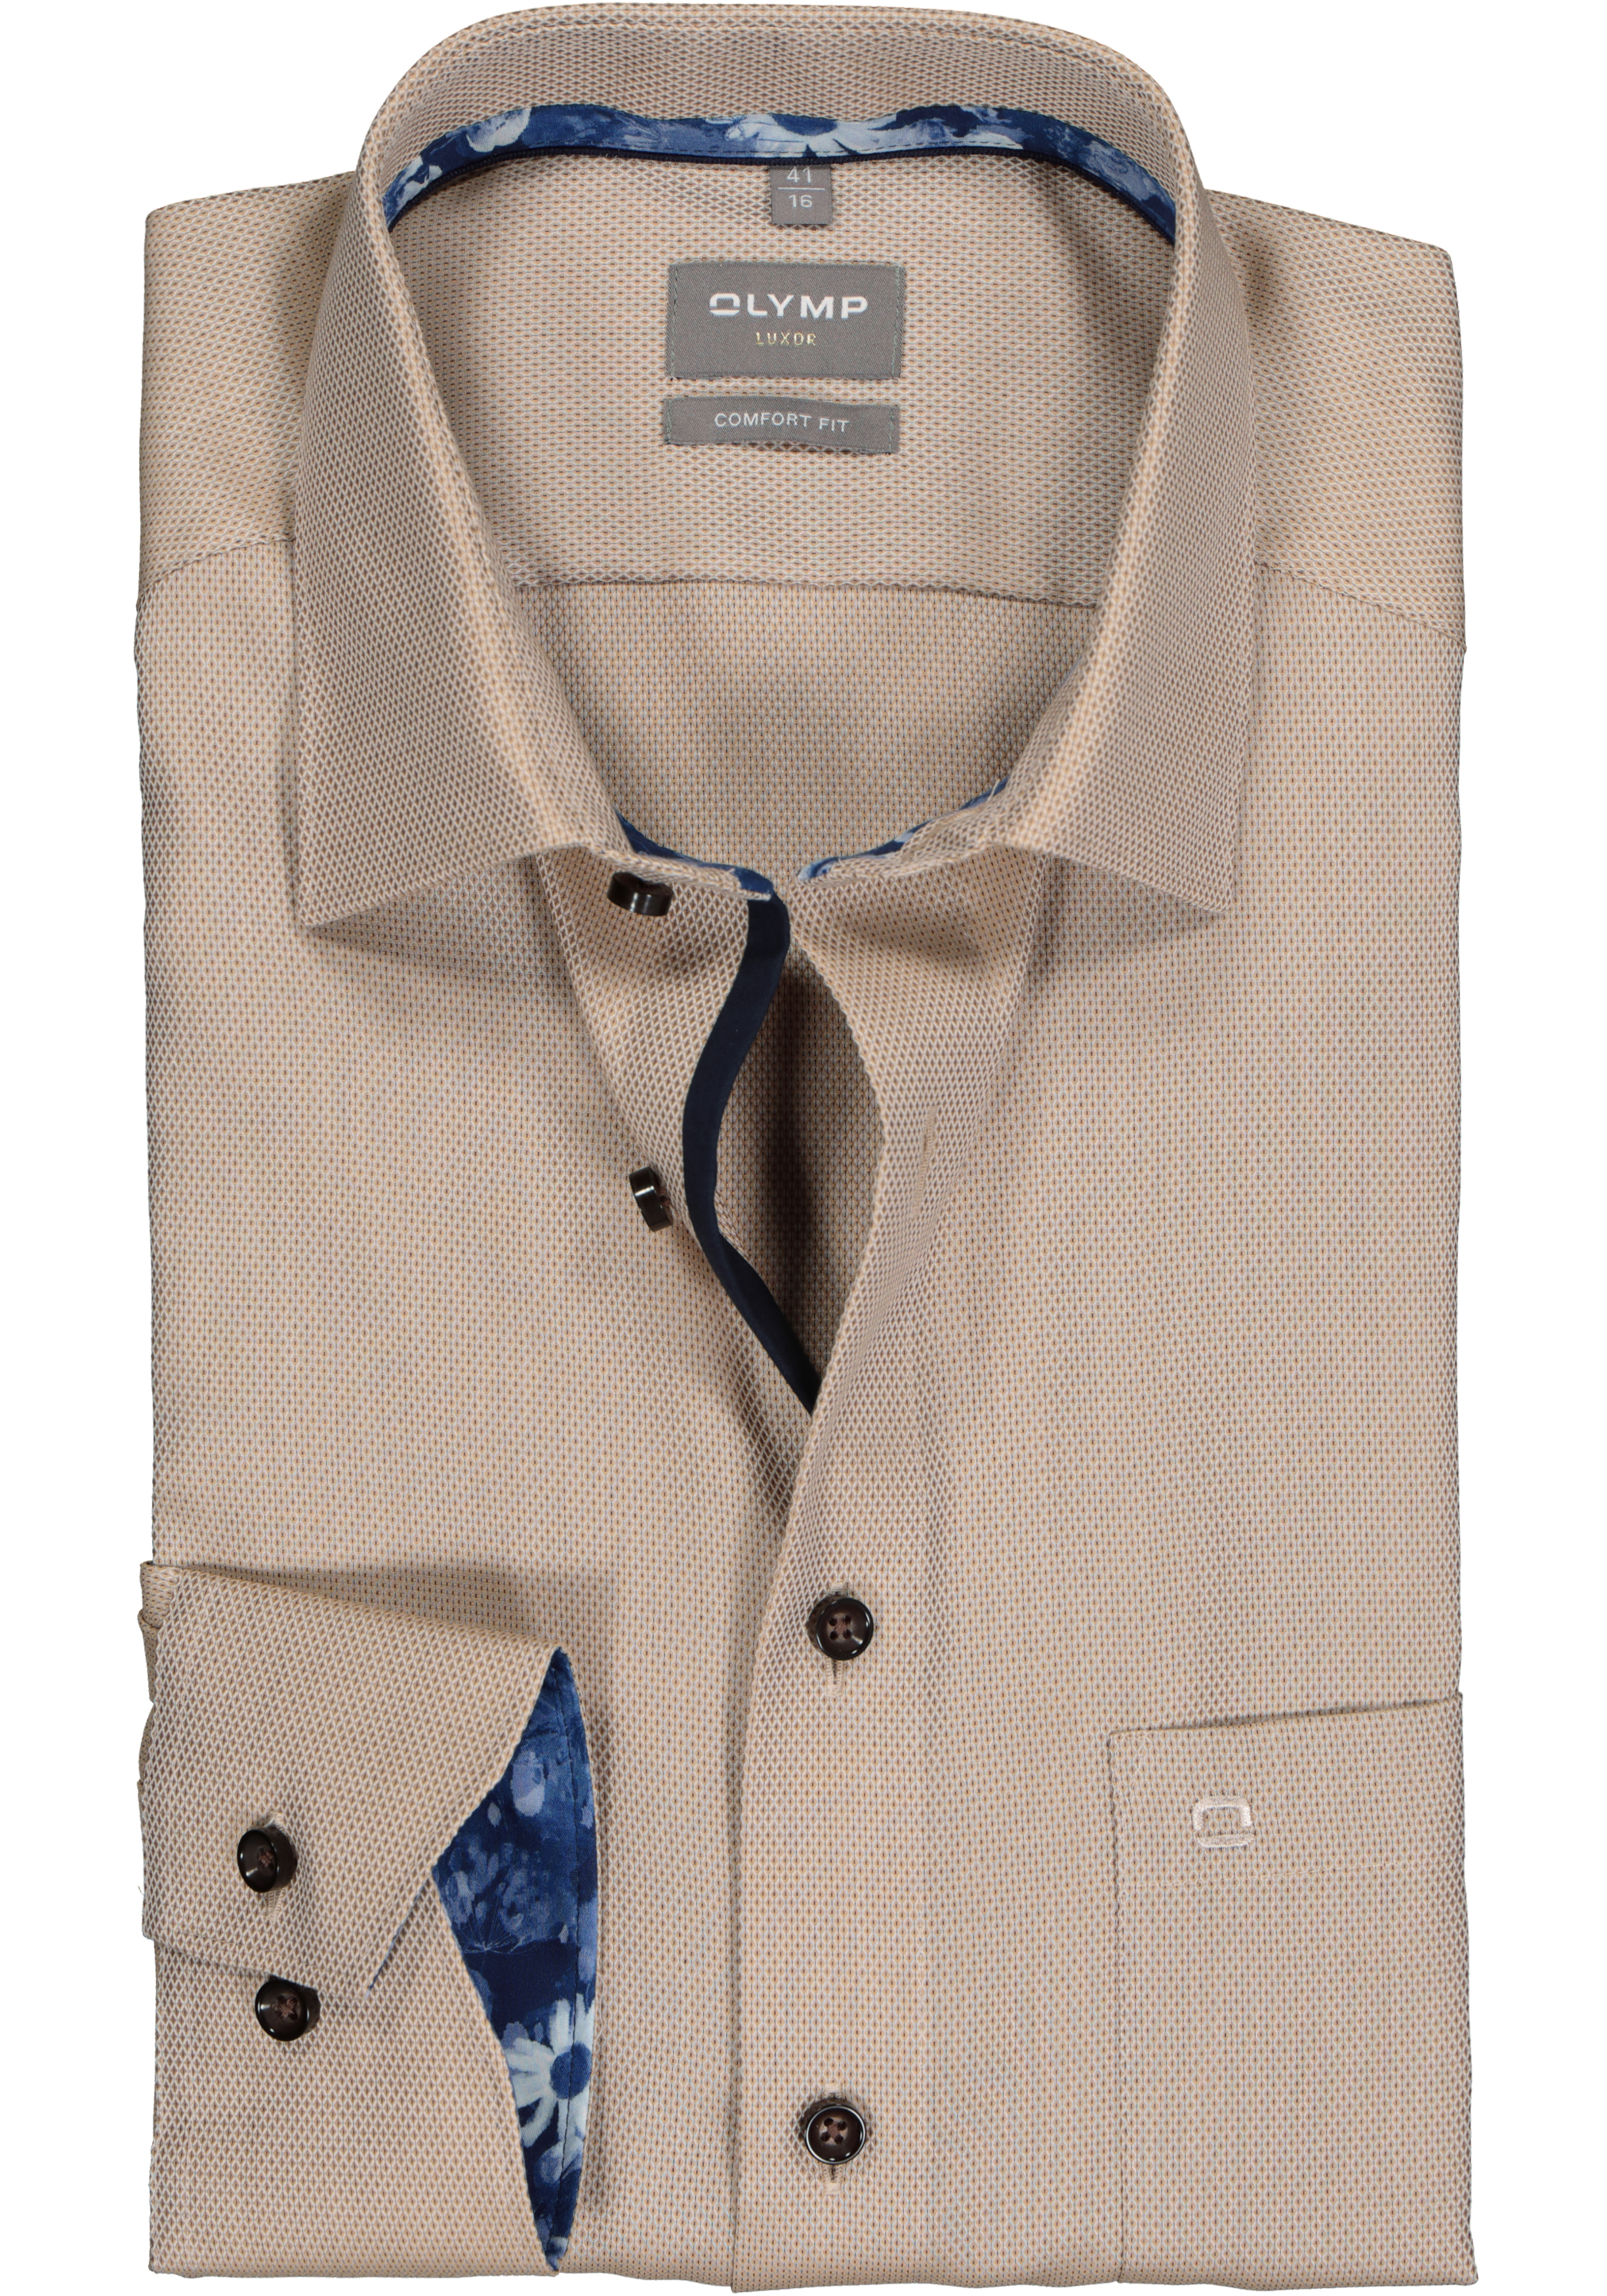 OLYMP comfort fit overhemd, mouwlengte 7, structuur, beige (contrast)